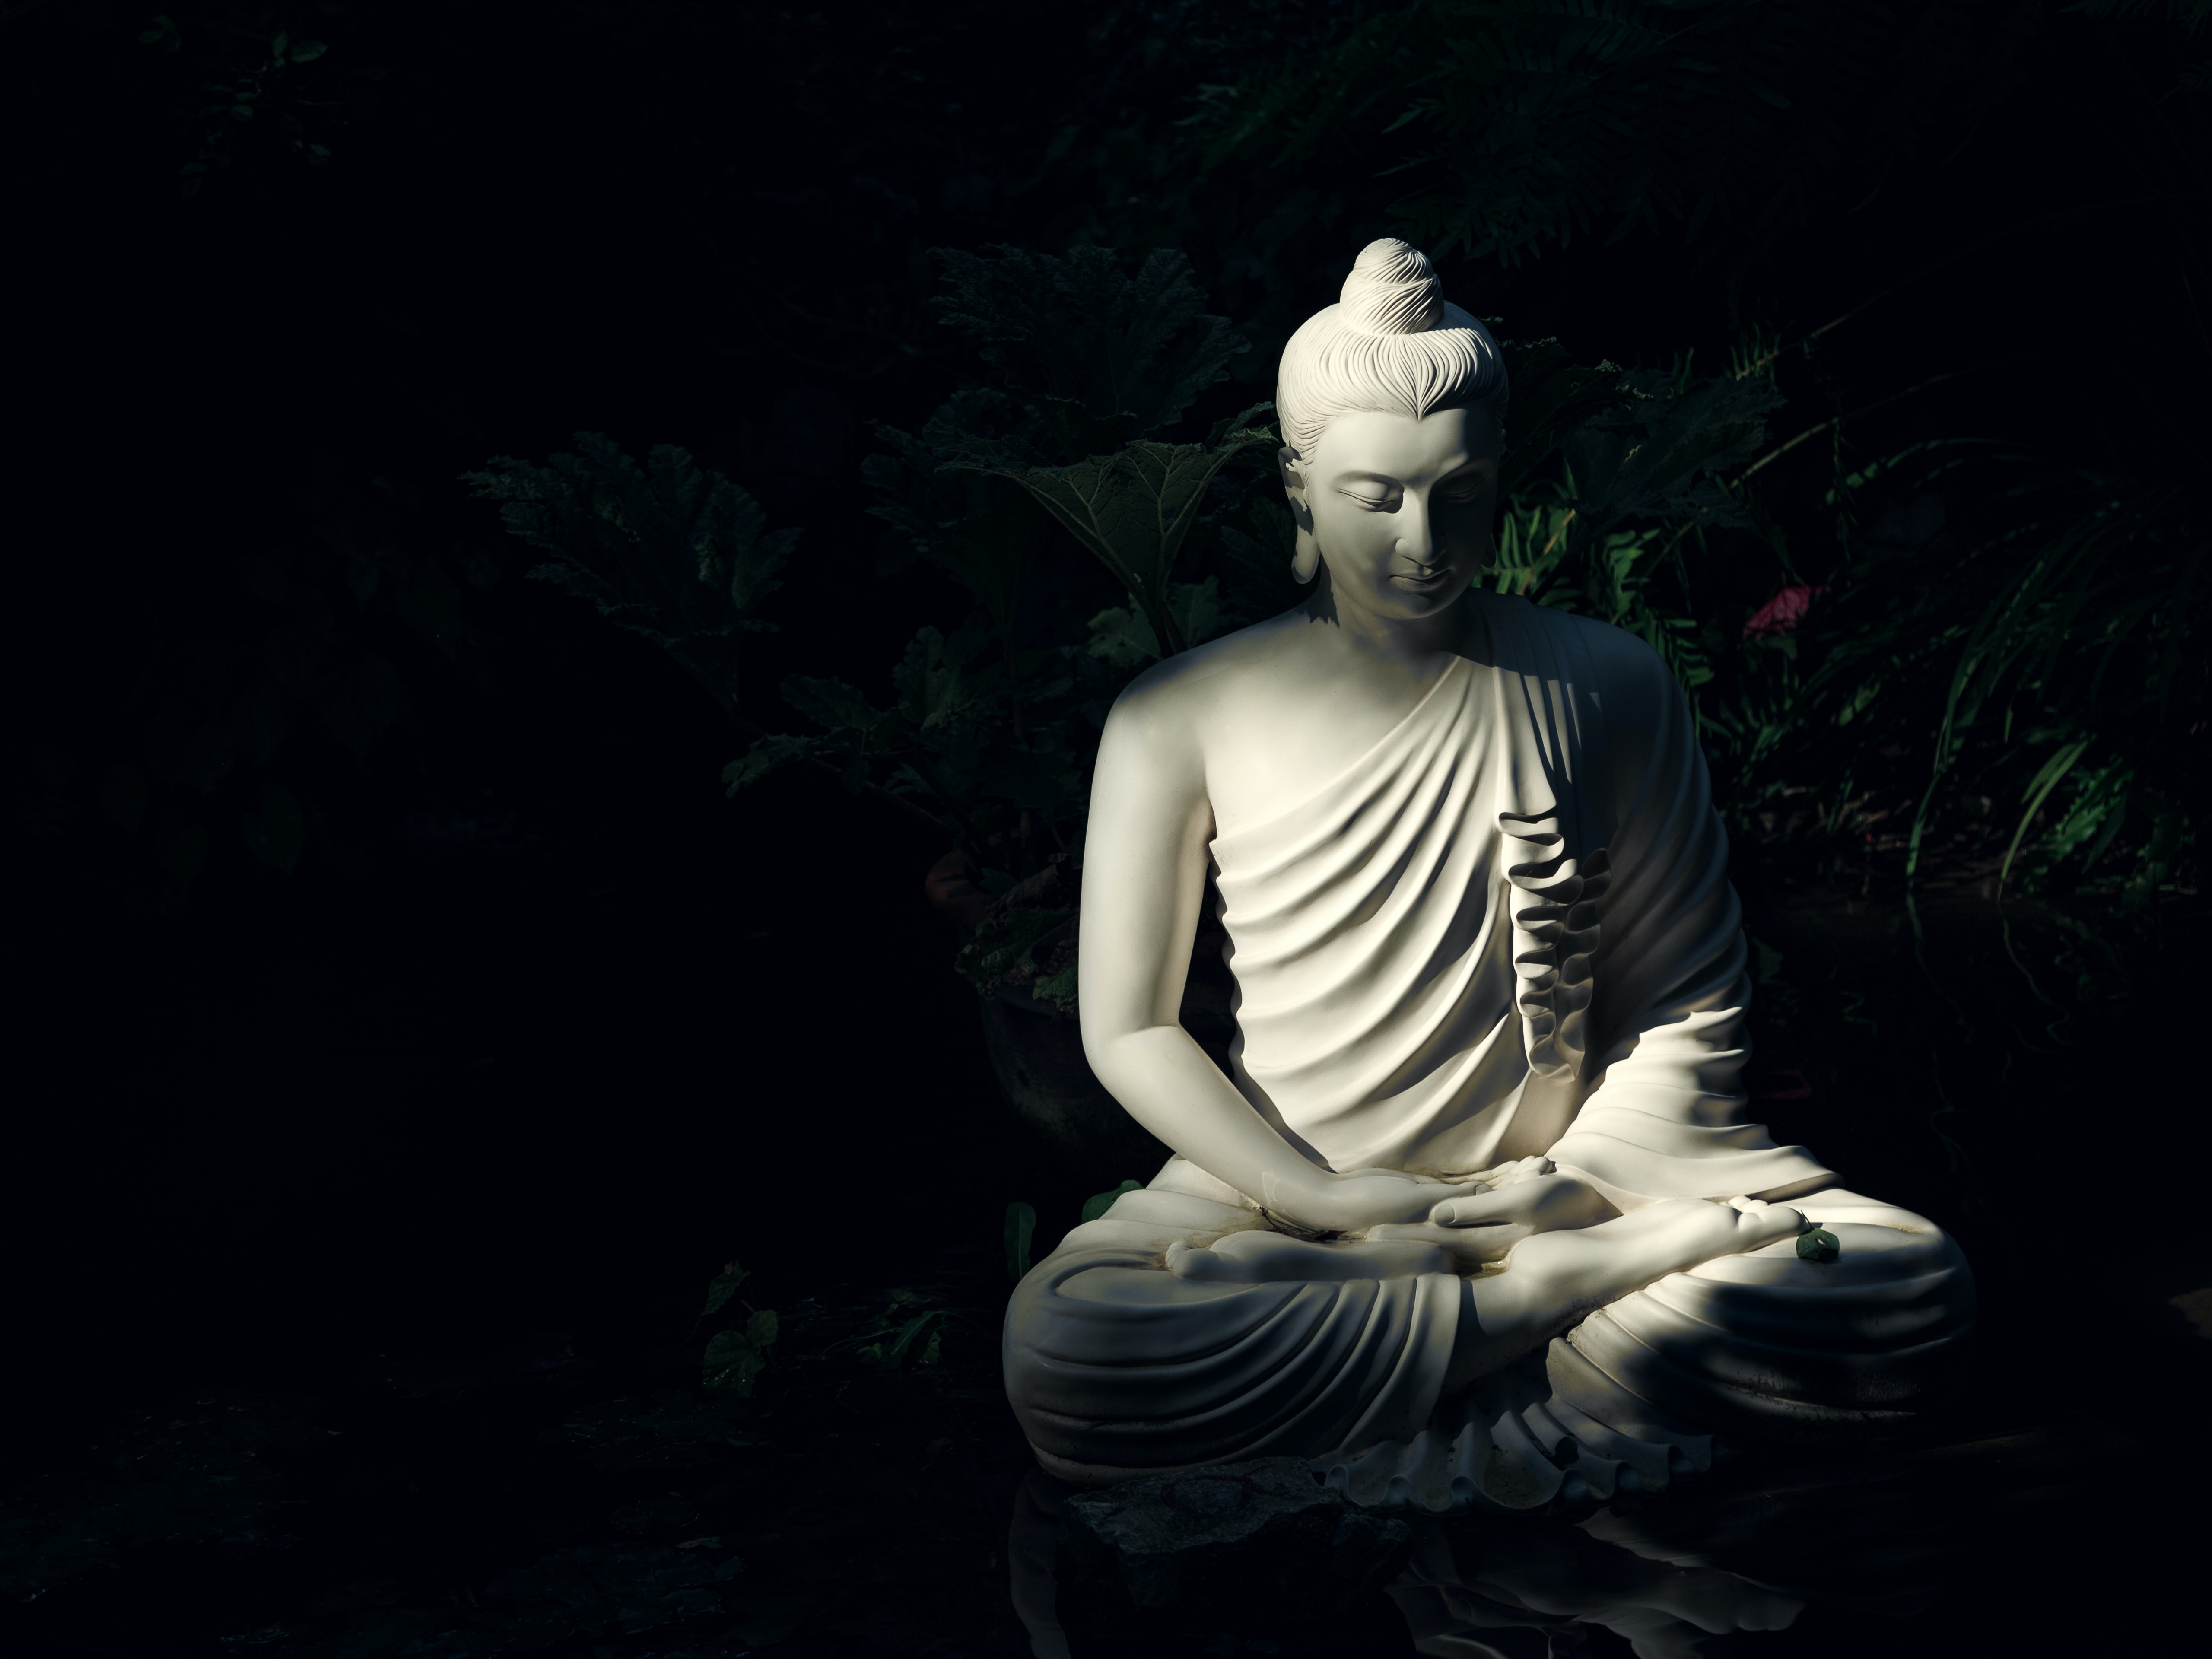 image of white statue ofbuddha with black background